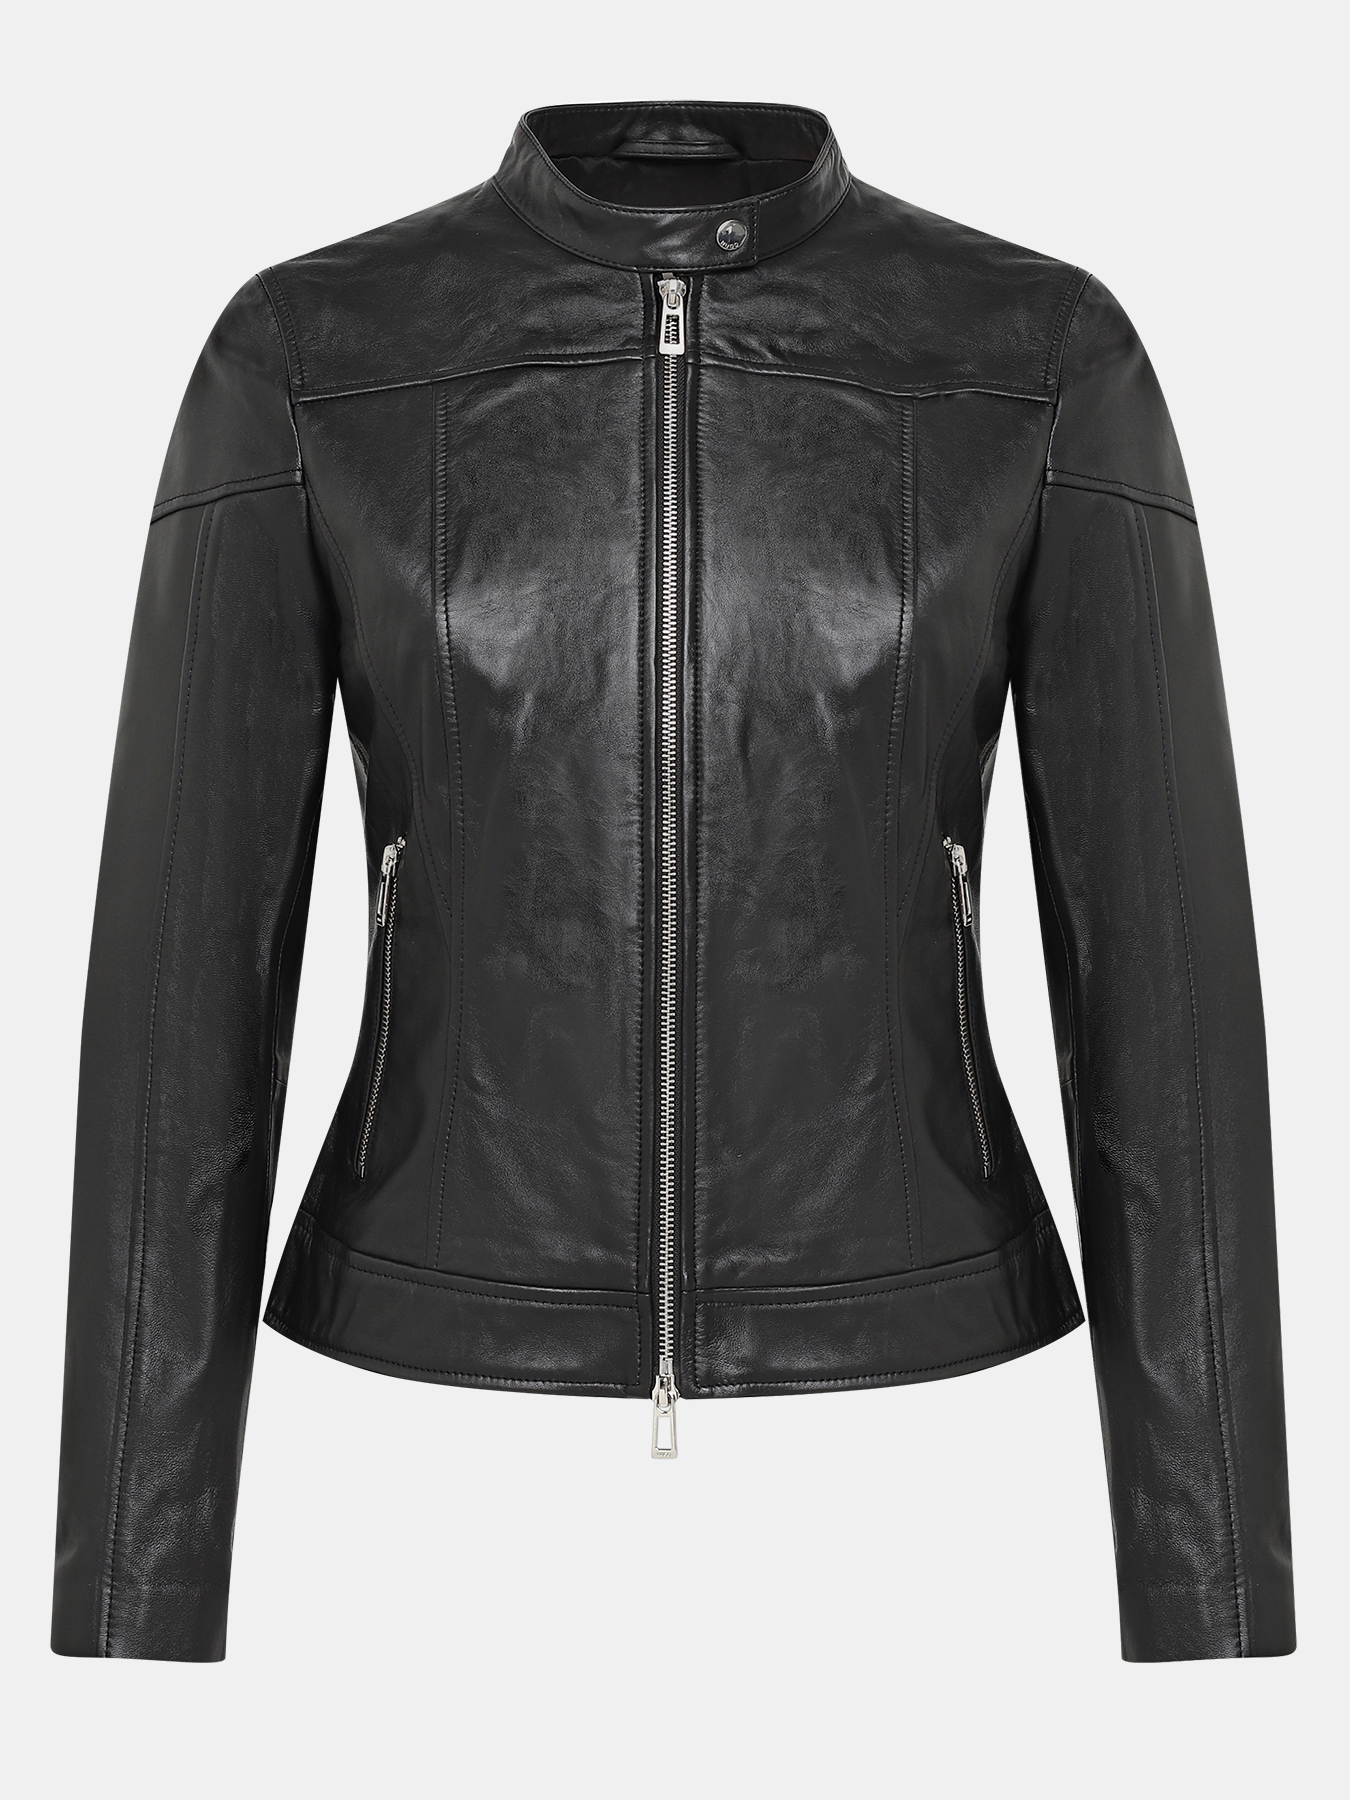 Кожаная куртка Lasena HUGO 406511-044, цвет черный, размер 46-48